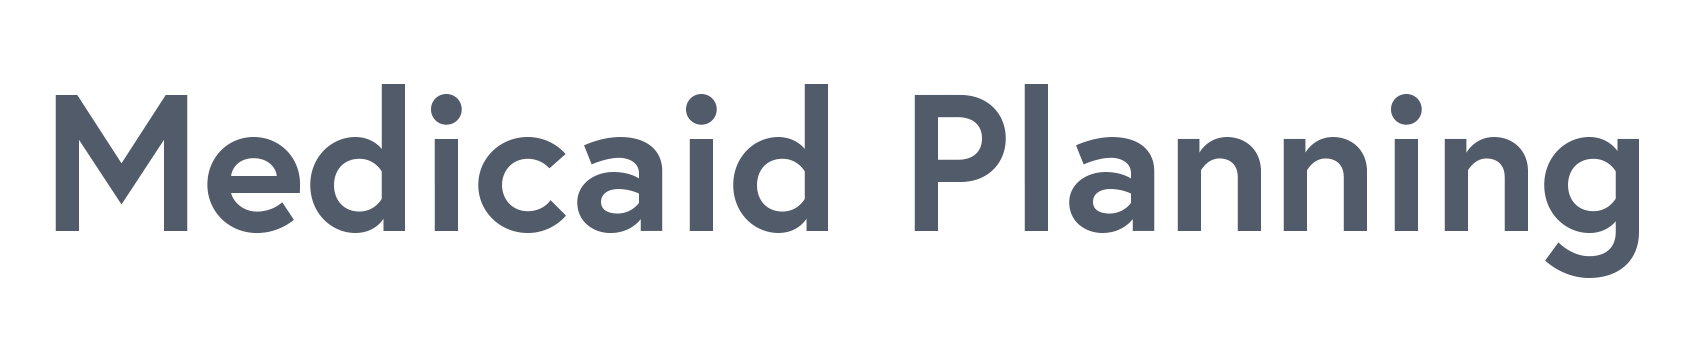 Medicaid Planning Indiana Logo